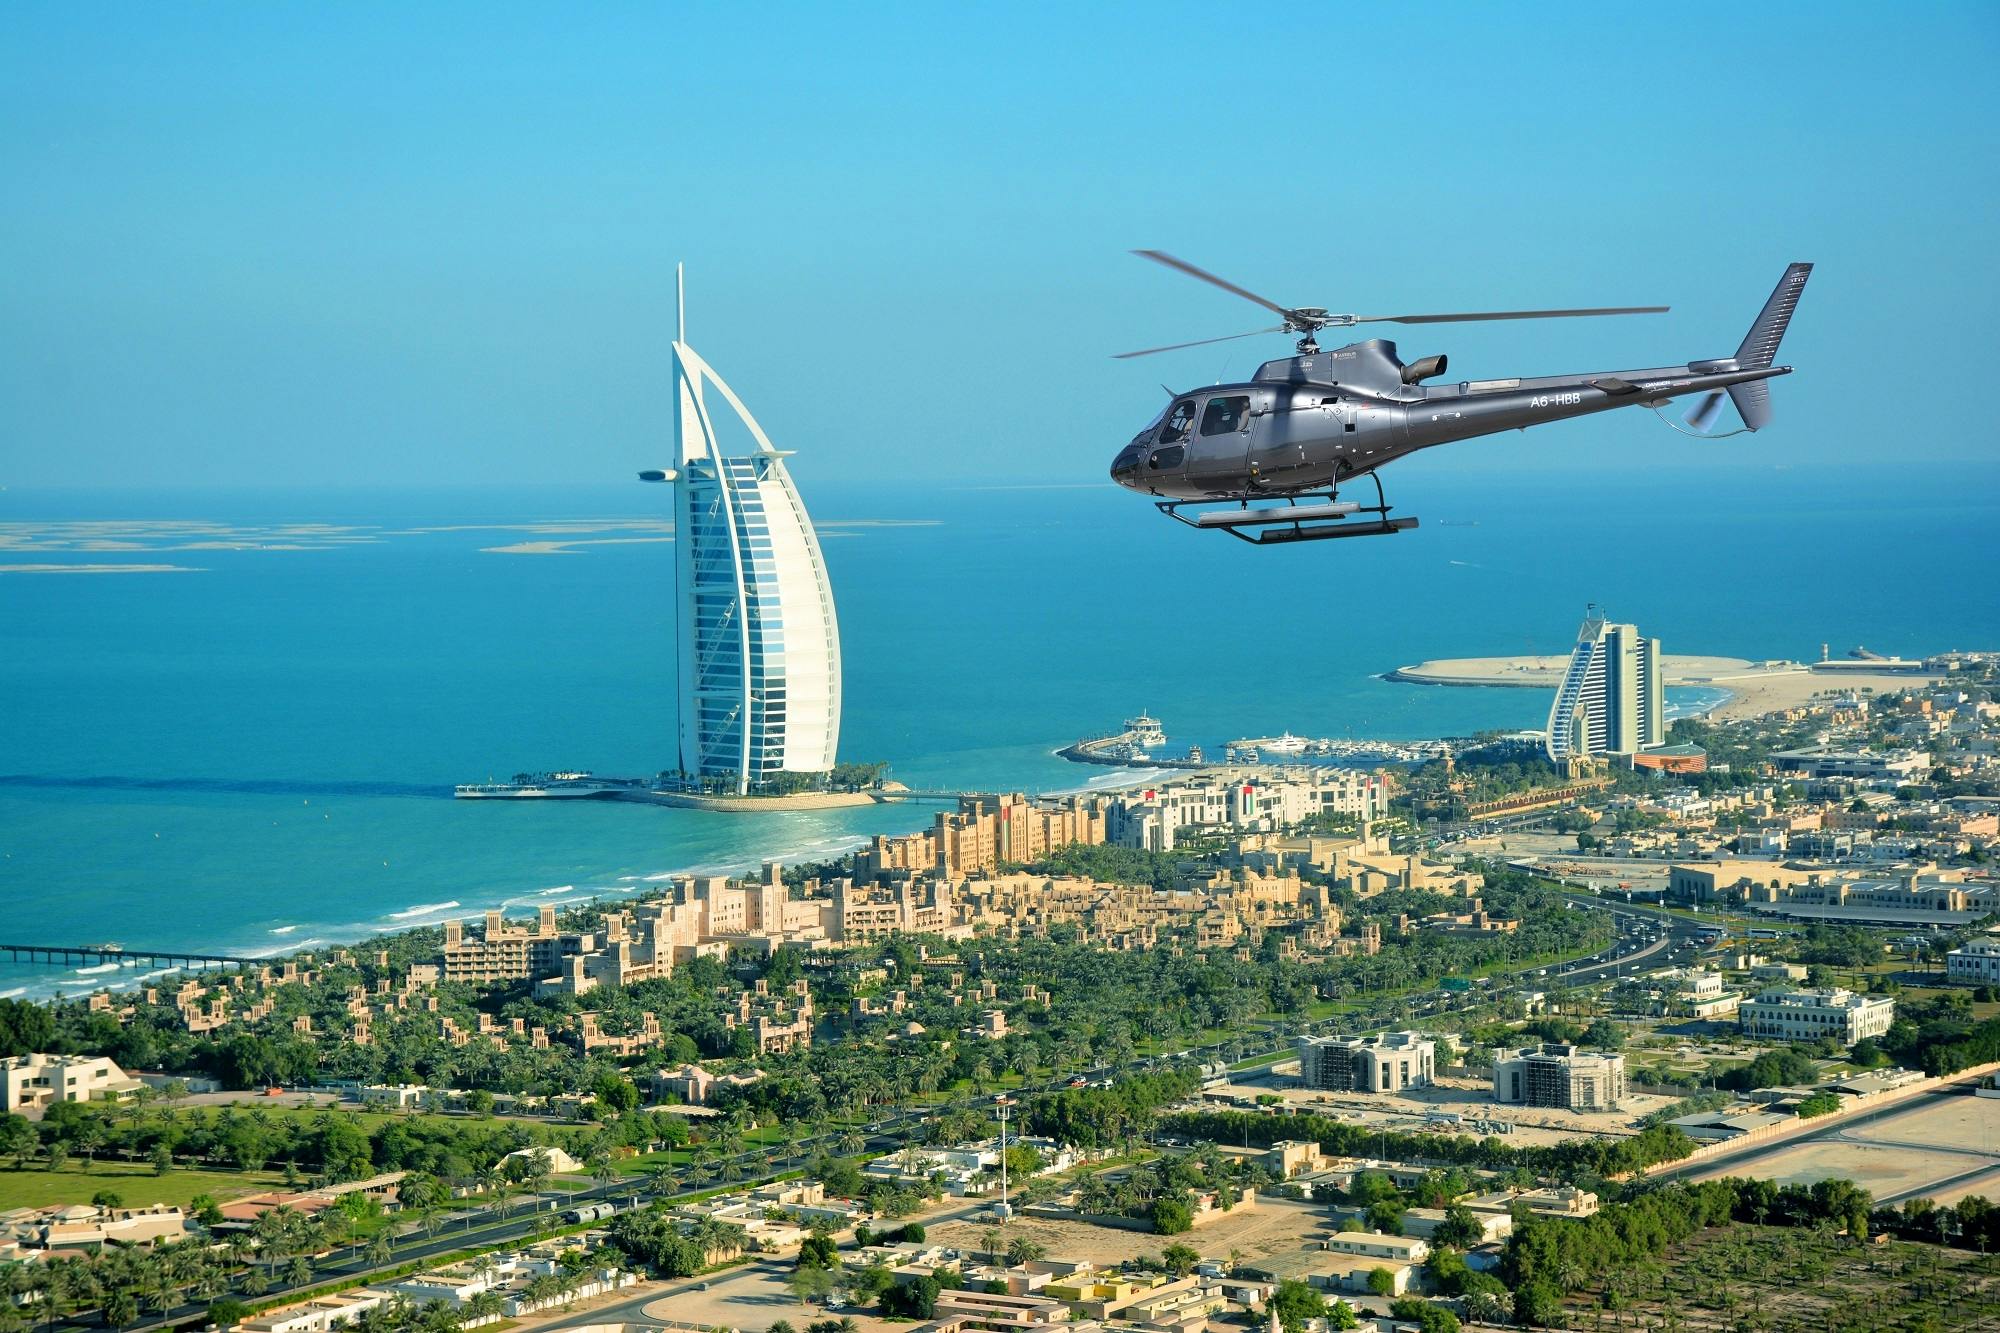 17 minuten durende helikoptervlucht boven Dubai